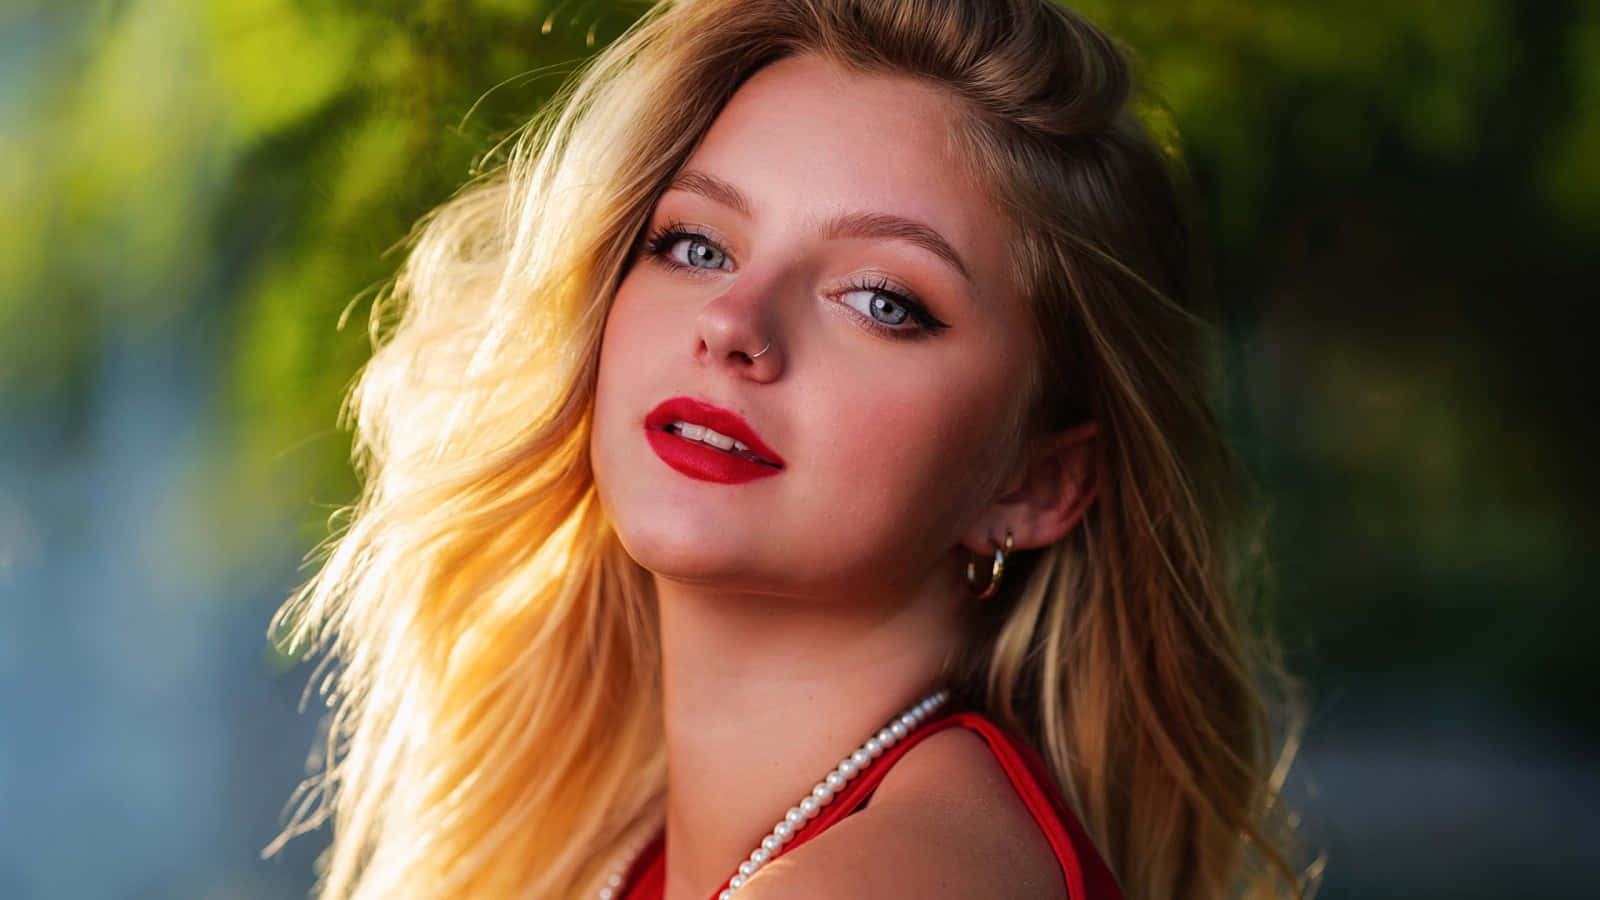 Blonde Ukrainian Girl Blushing Photoshoot Wallpaper